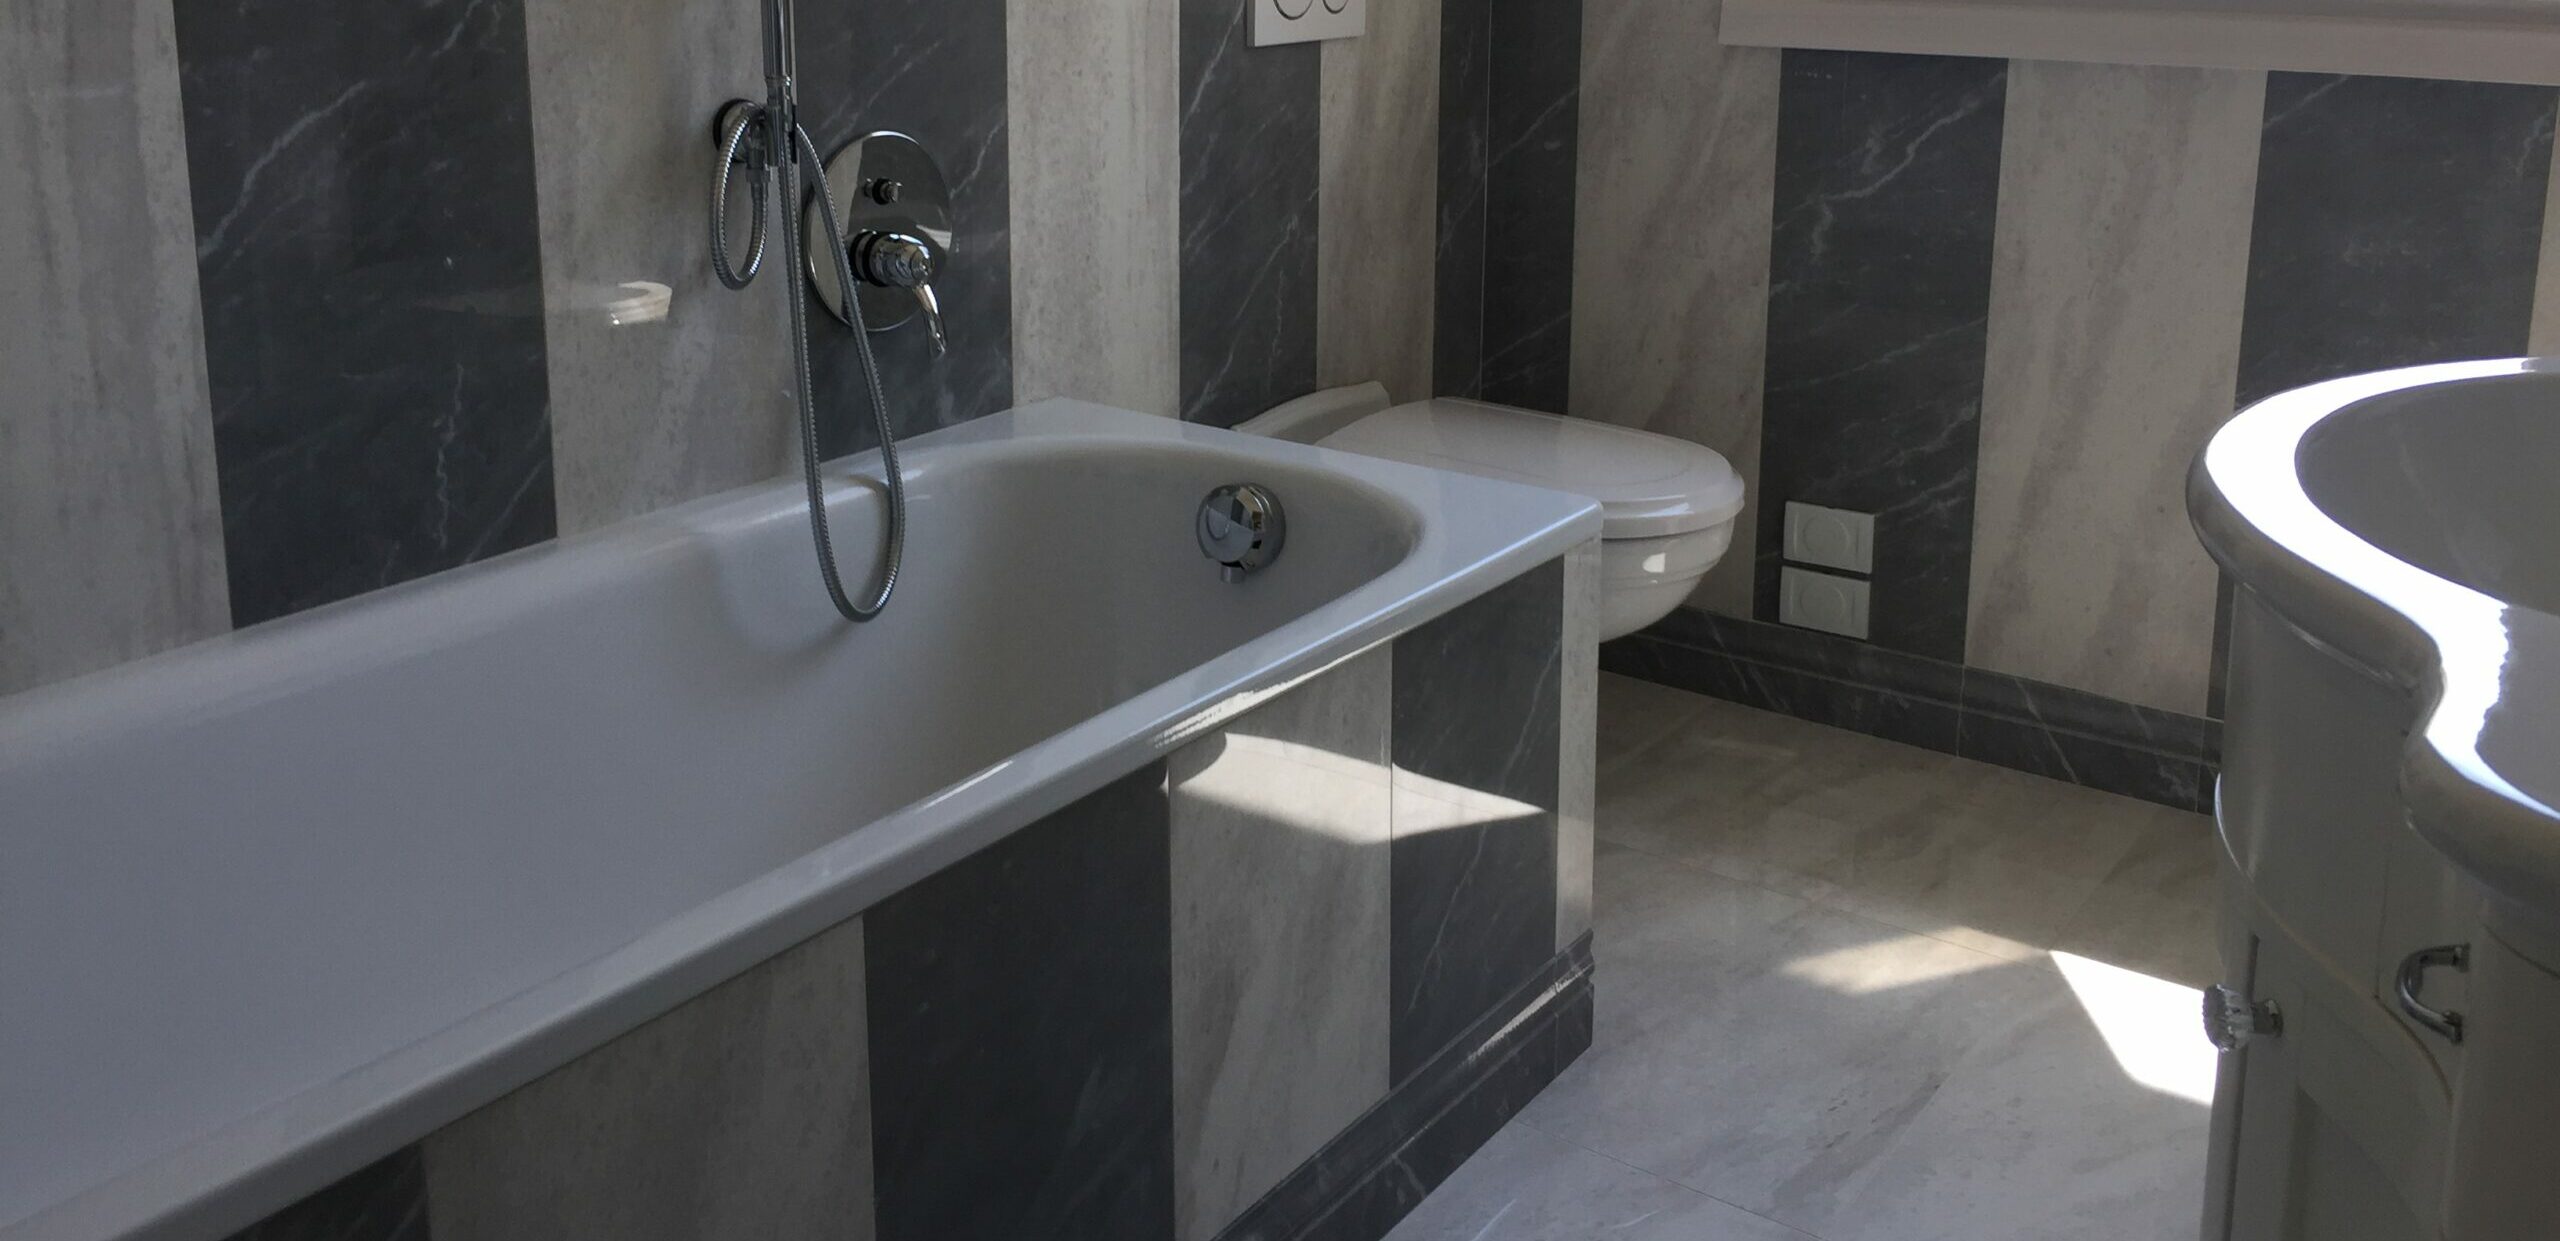 bagno in marmo bicolore - progetto da gian lorenzo dalle luche